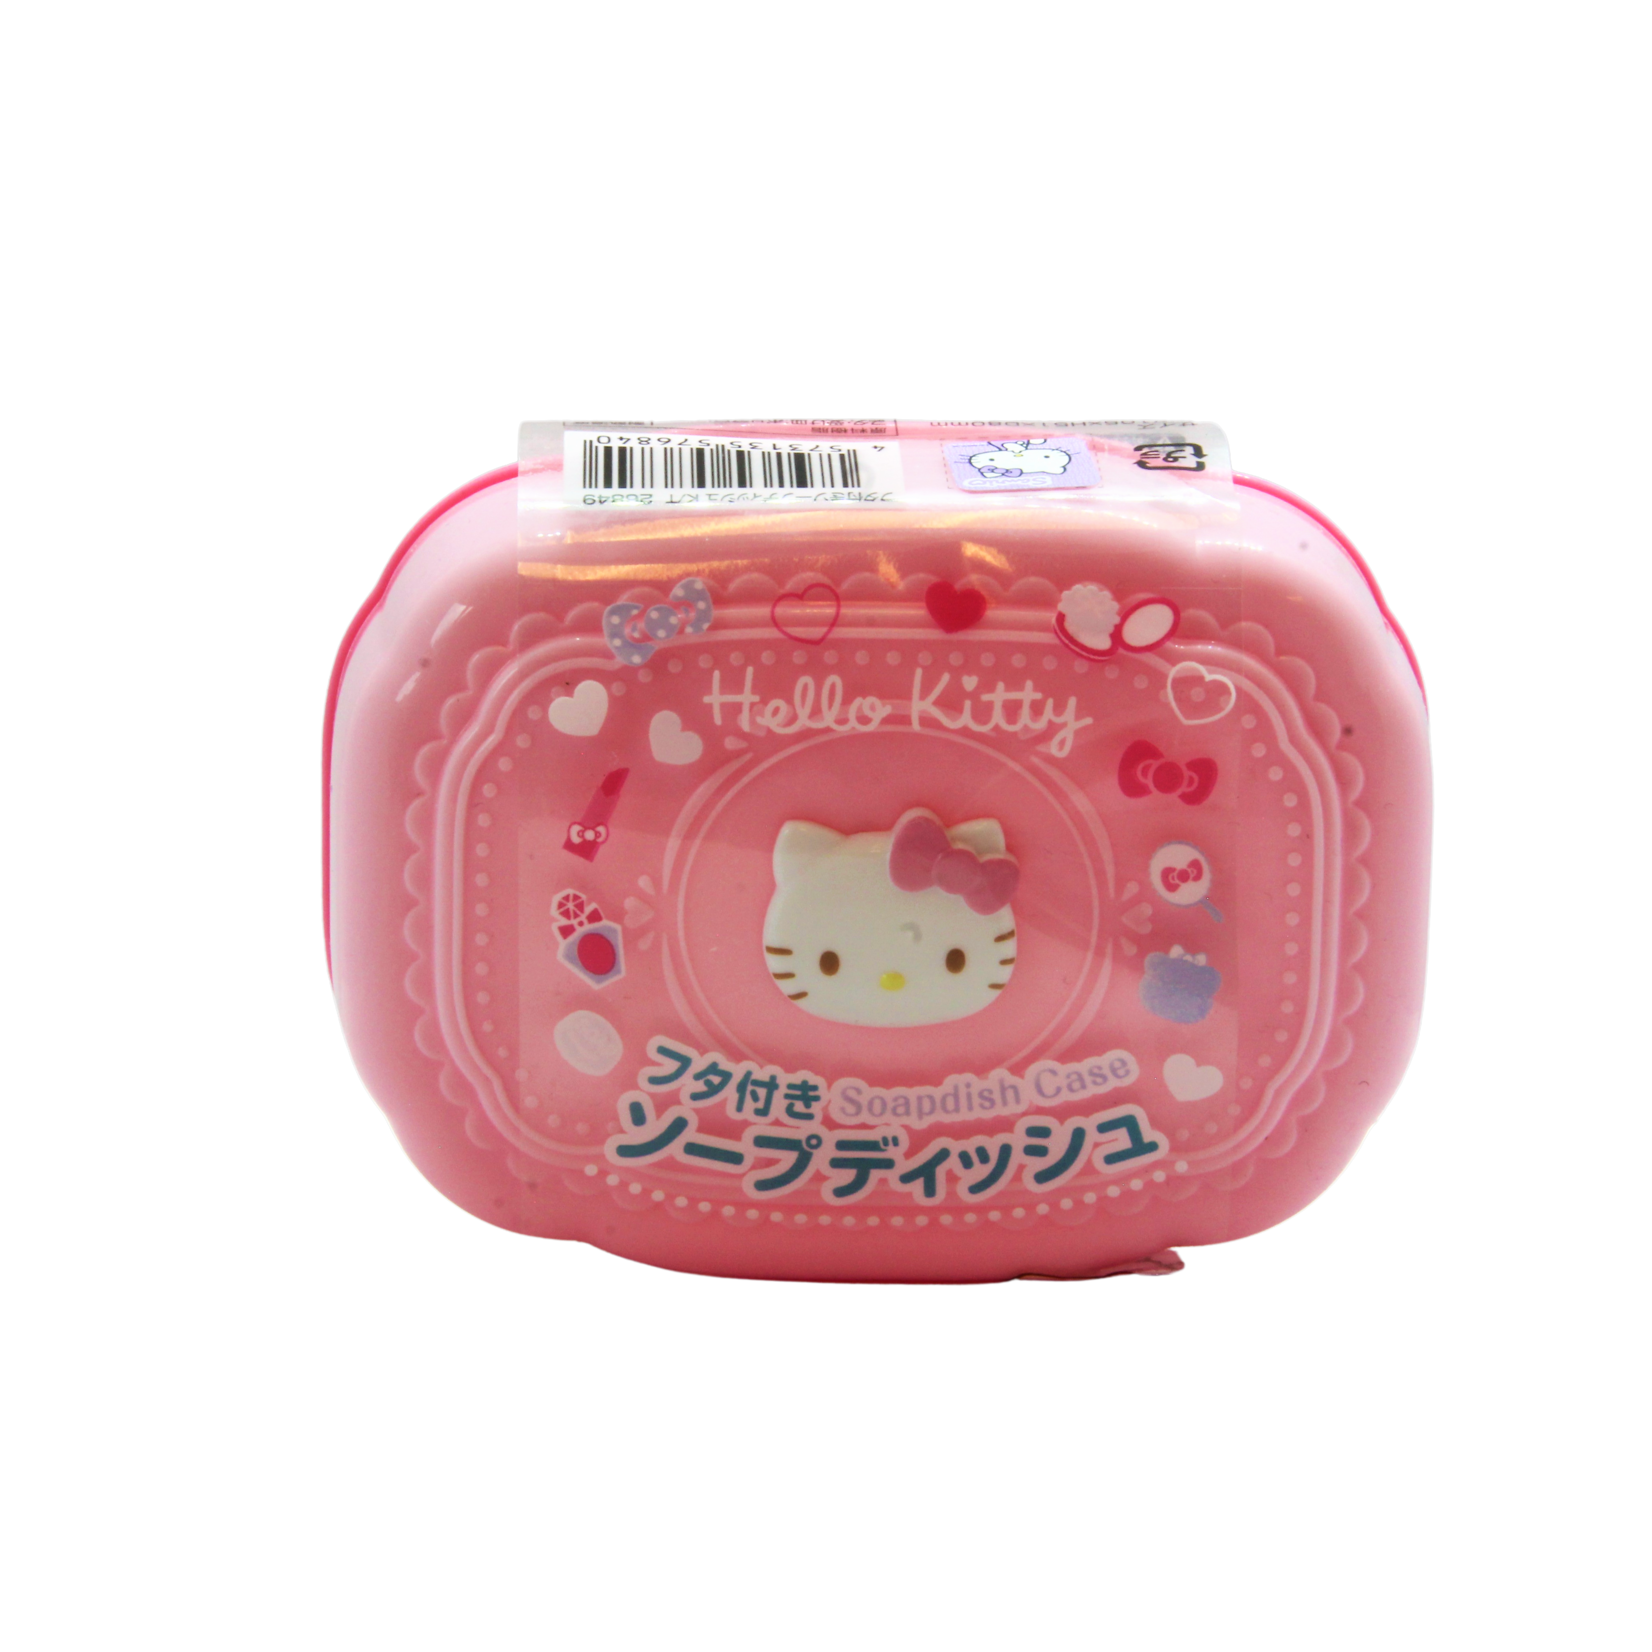 Overige Merken Hello Kitty soap dish